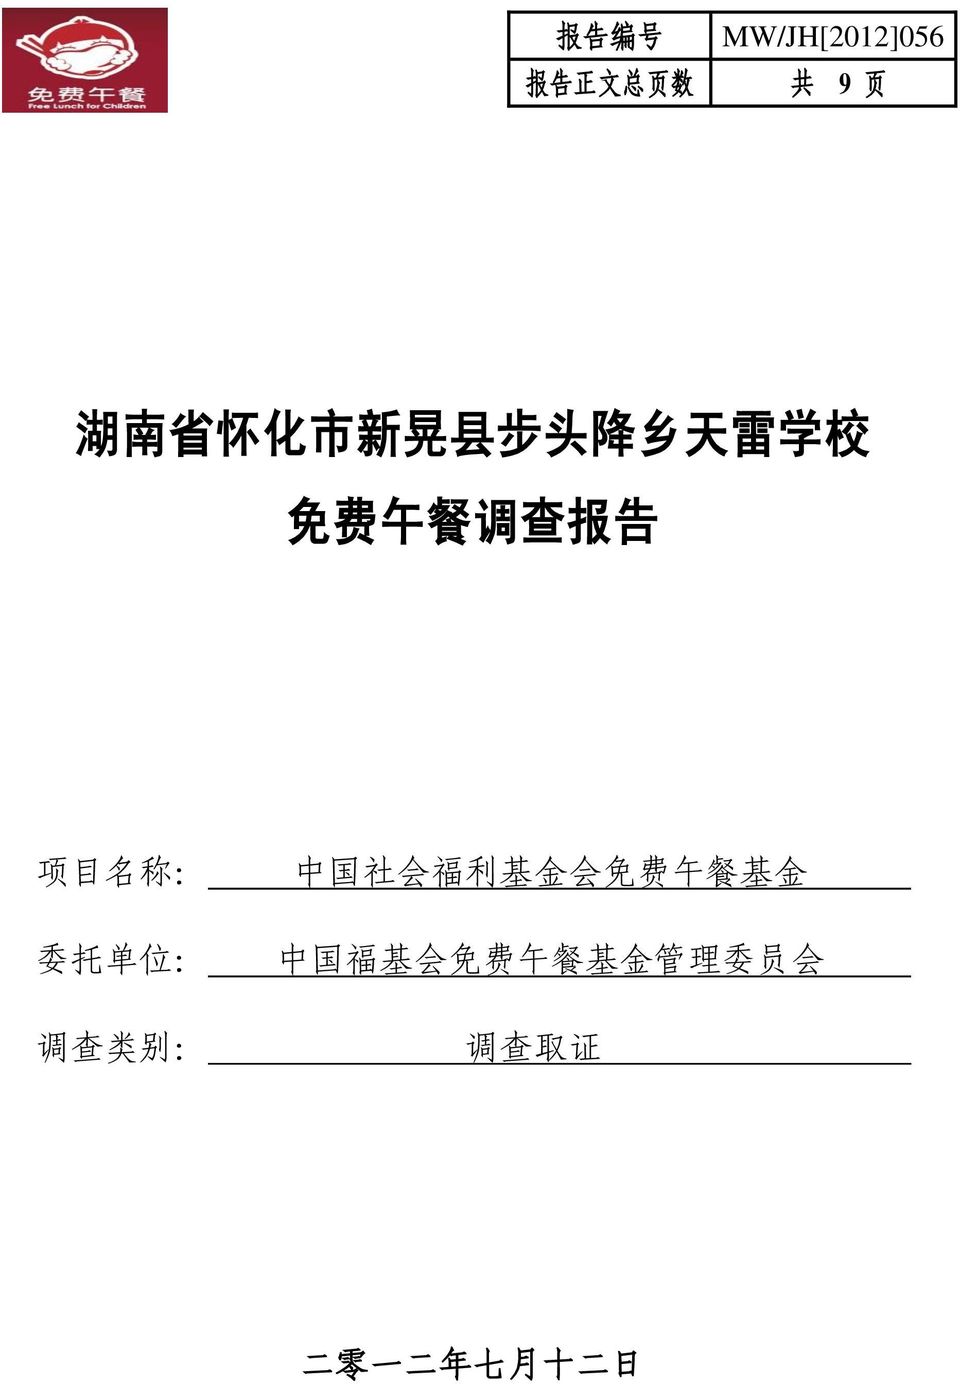 托 单 位 : 调 查 类 别 : 中 国 社 会 福 利 基 金 会 免 费 午 餐 基 金 中 国